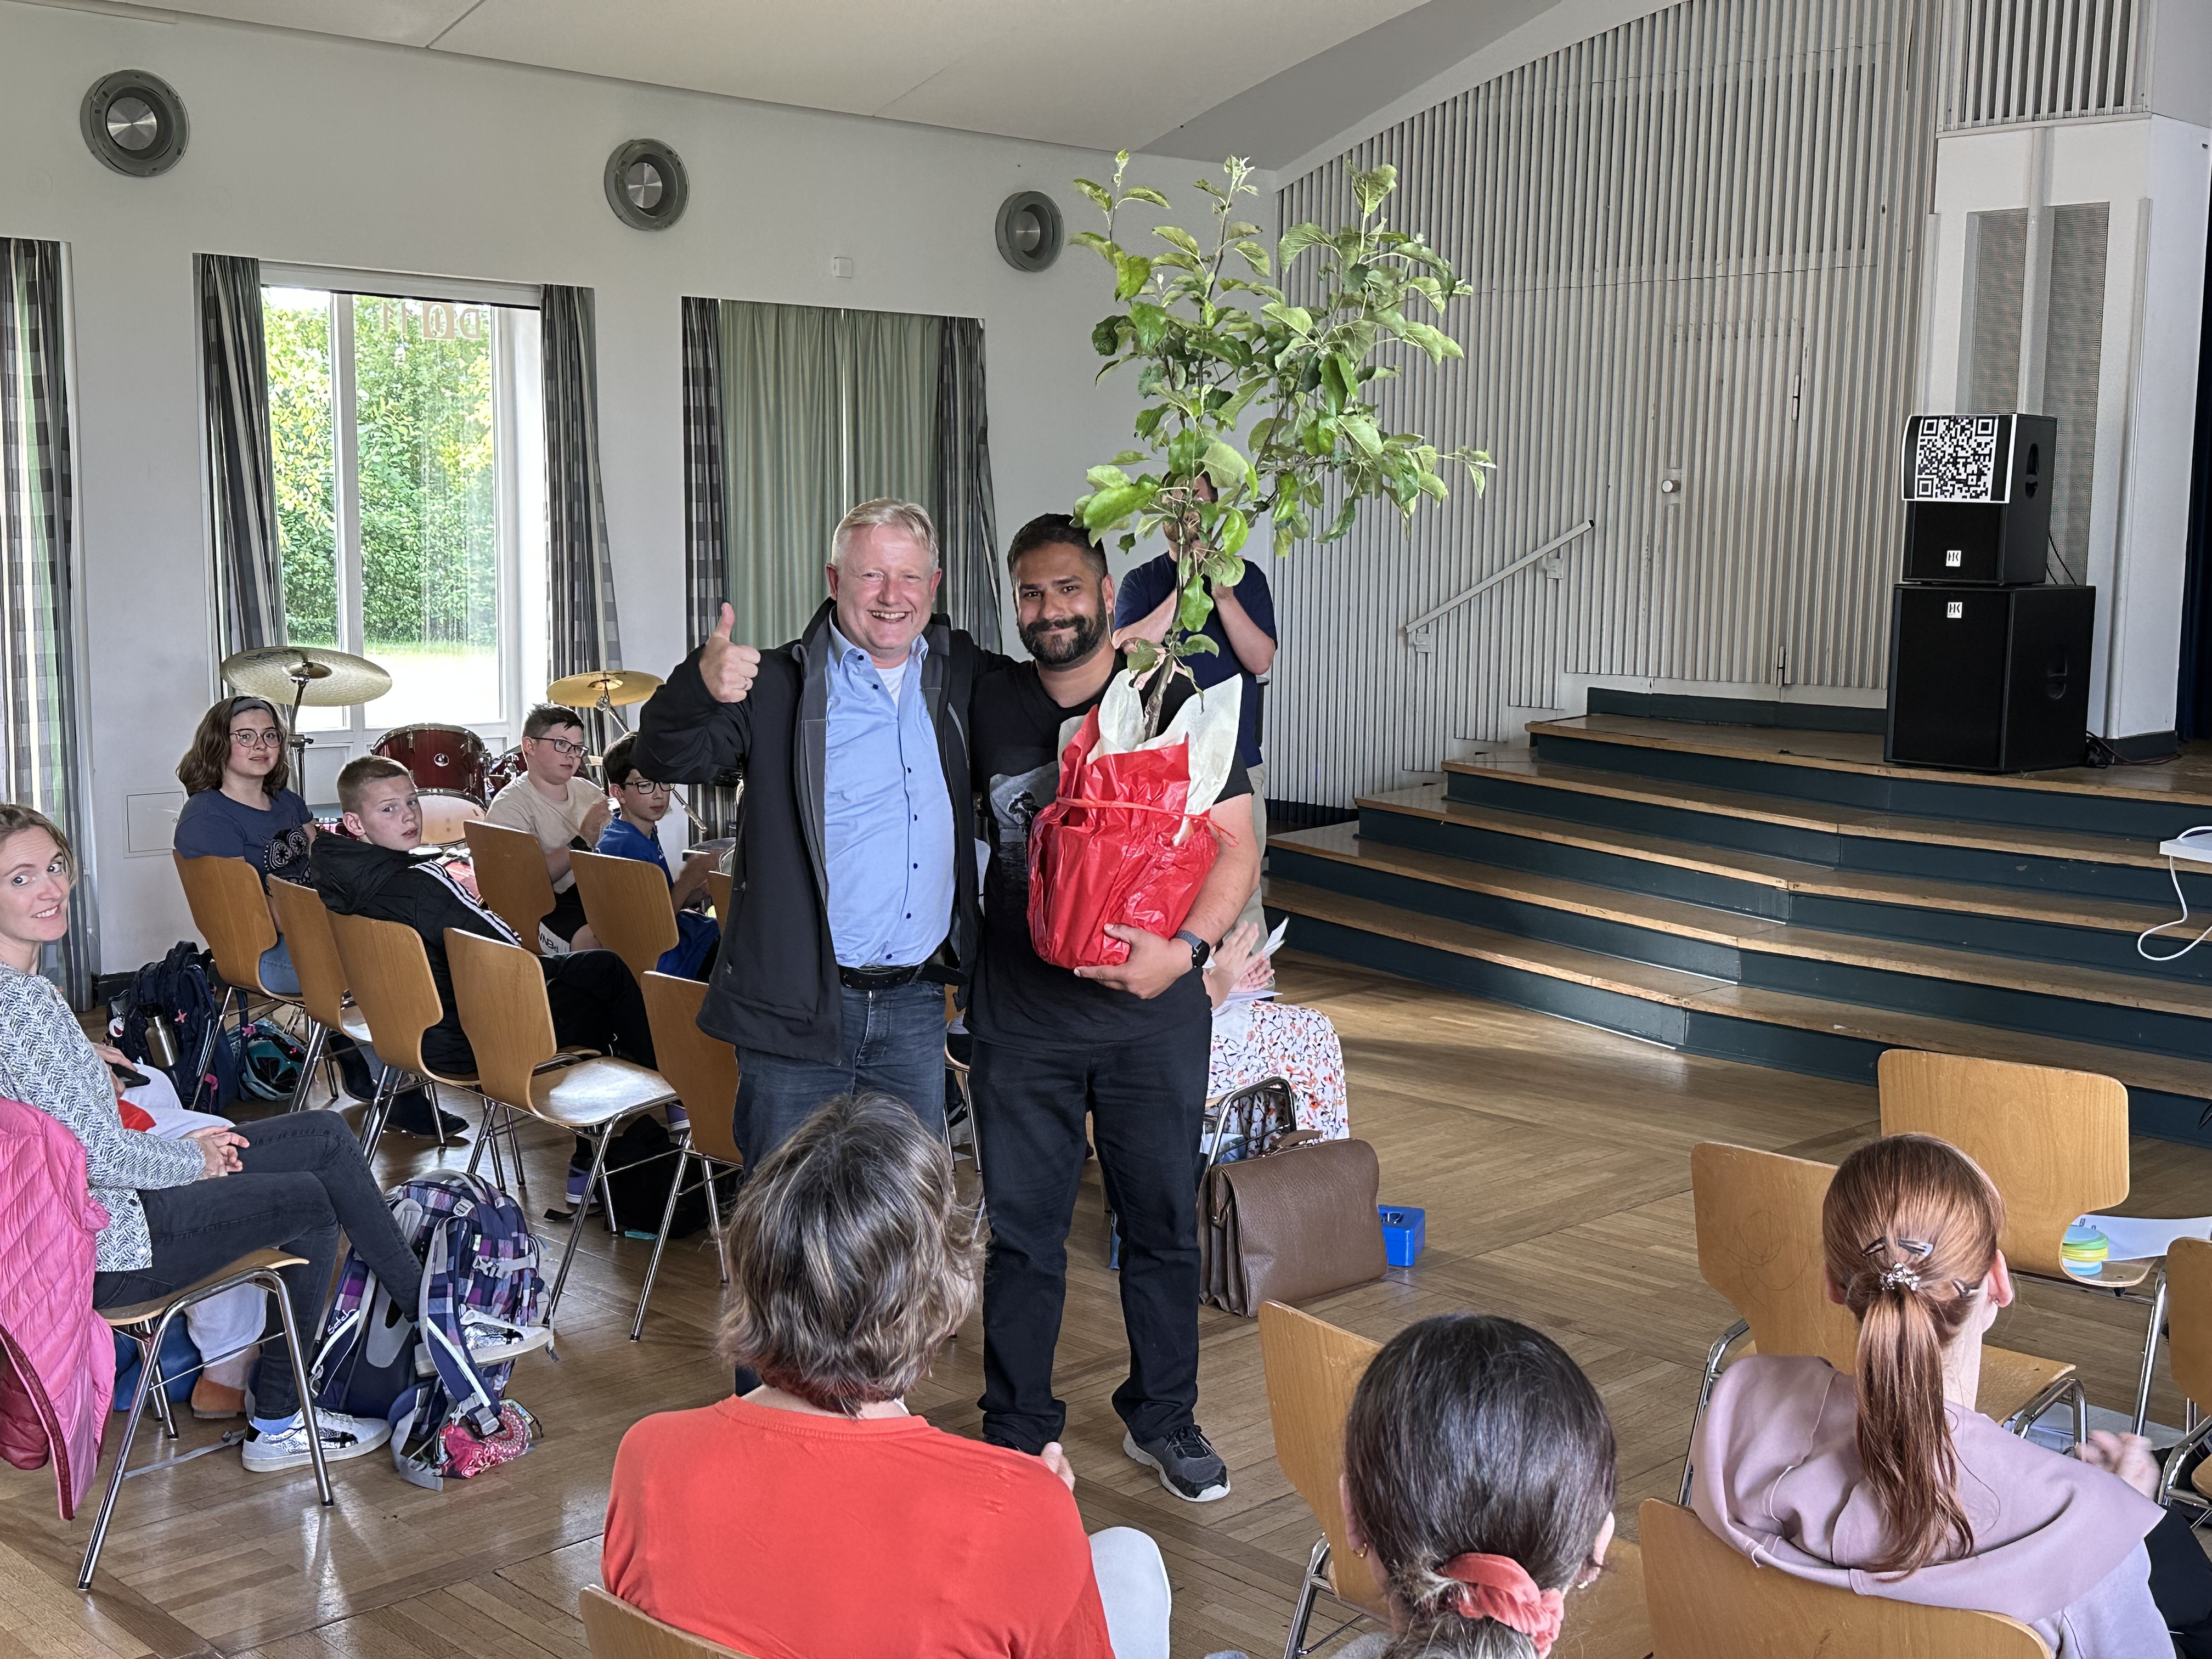 Bild: Thorsten Wendt (links) bekommt Apfelbaum von Fabian Shafiq (rechts), Bild von Nils Kanitz